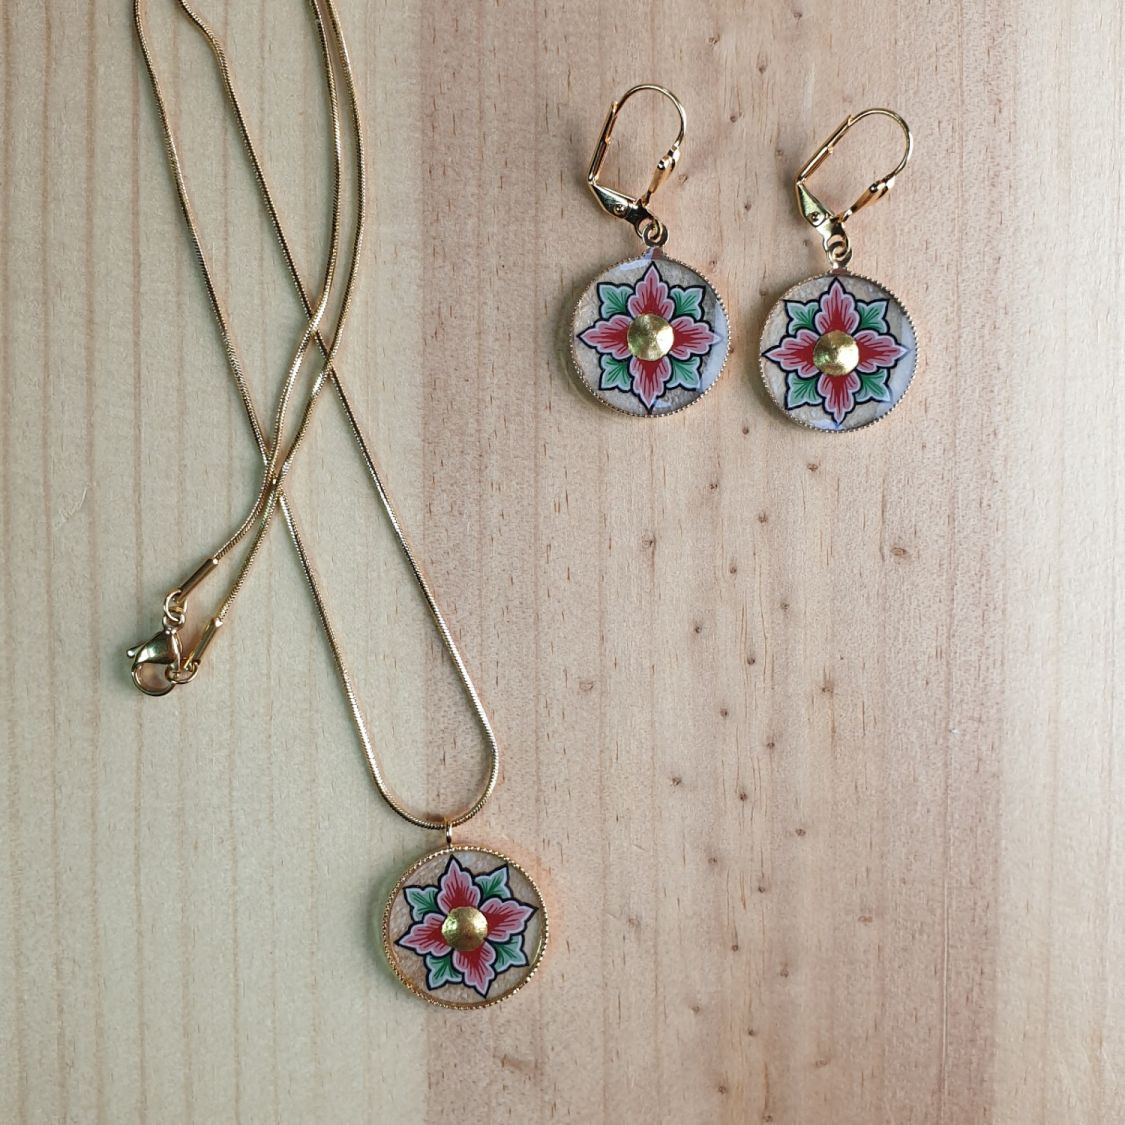 Boucles d'oreille pendantes enluminées printanières fleur rose ou bleue